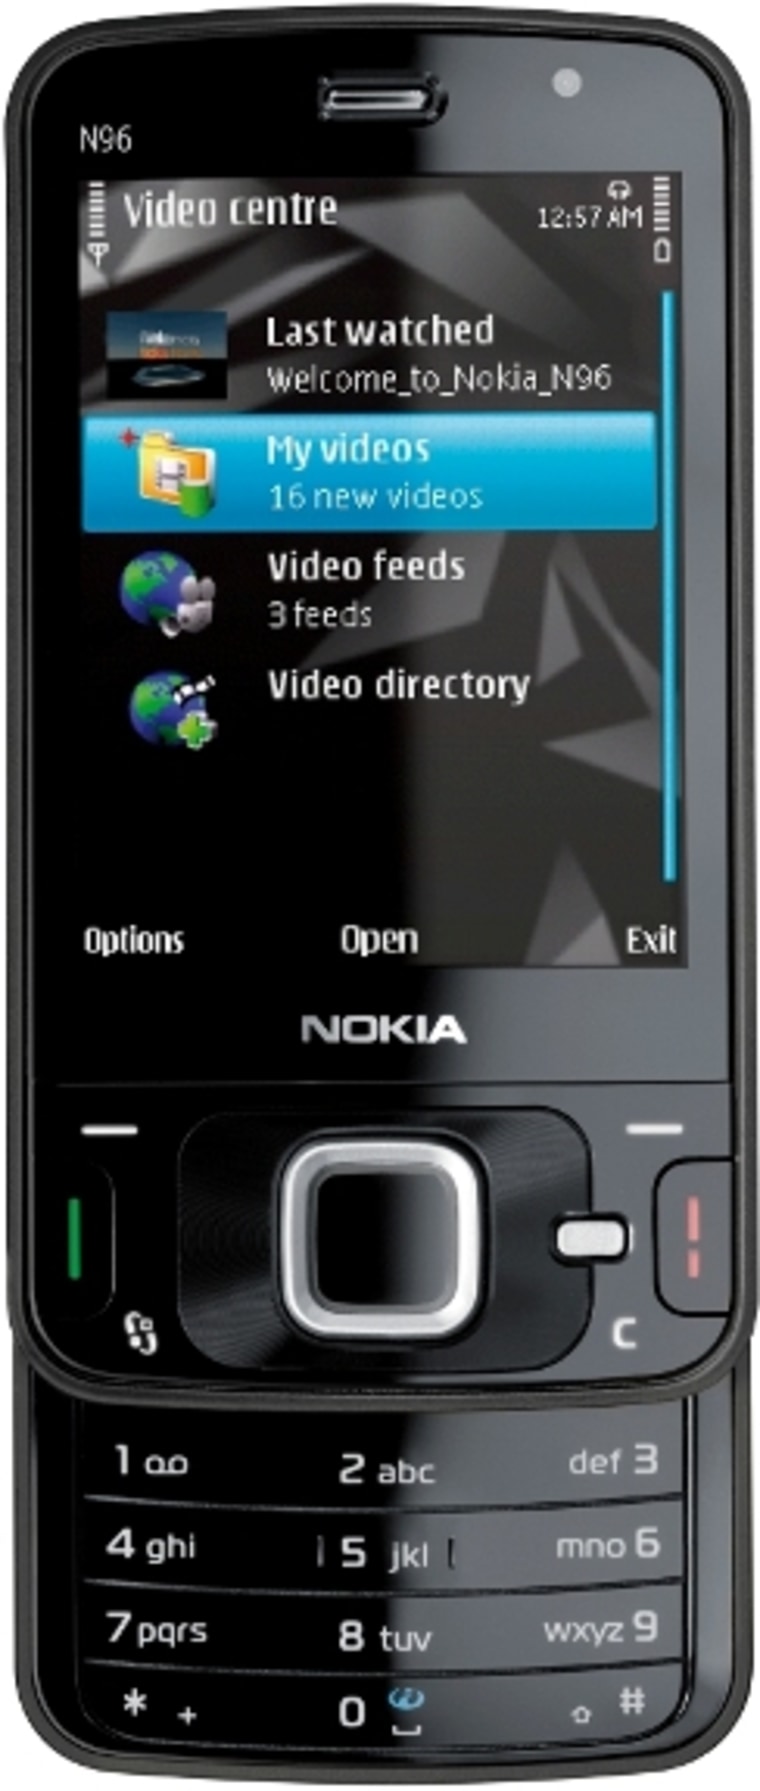 Image: Nokia N96